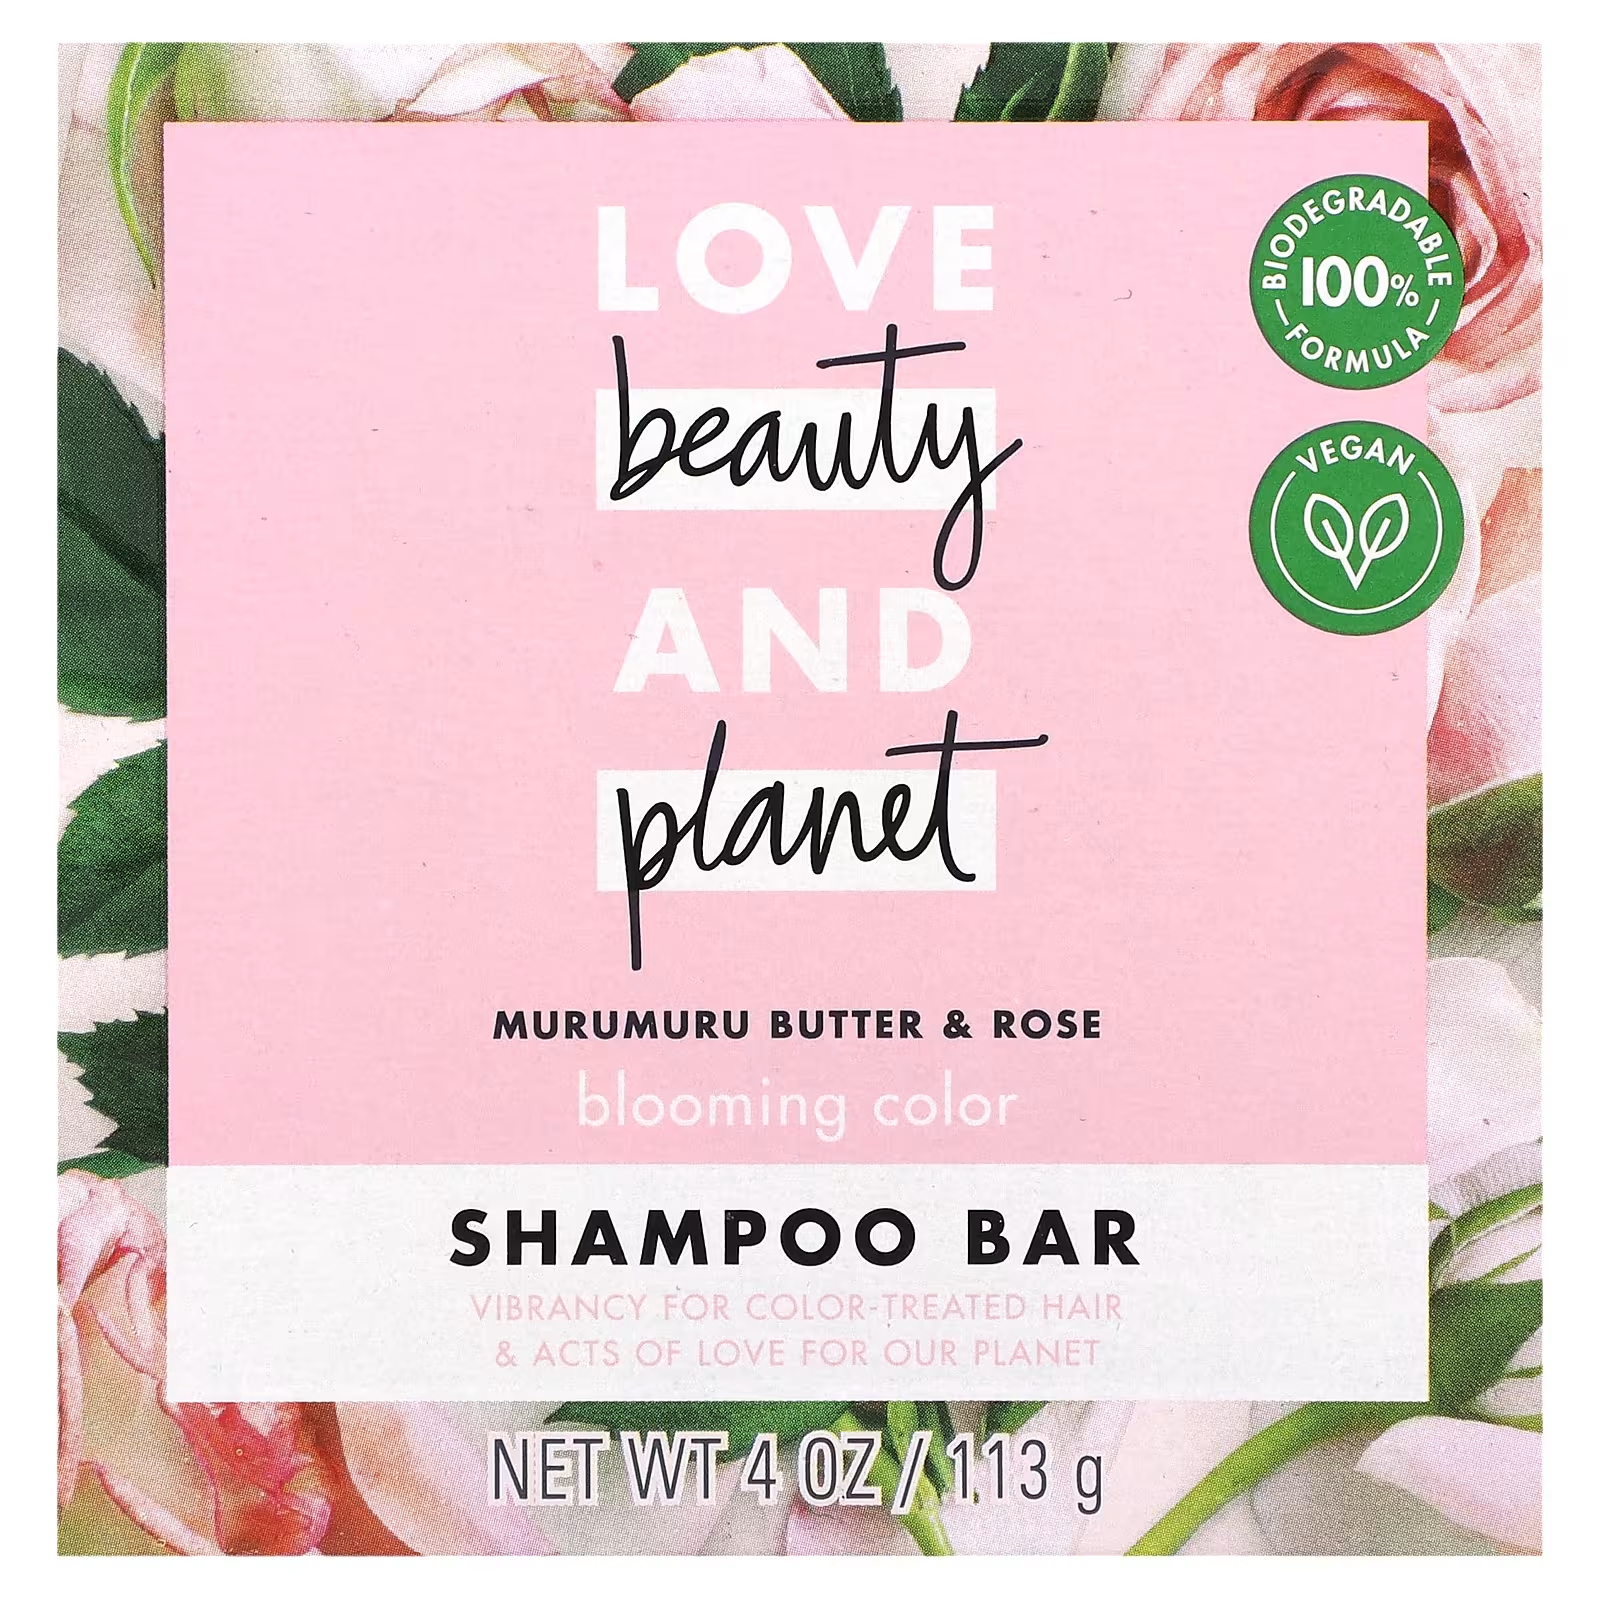 Шампунь Love Beauty and Planet Blooming Color Murumuru Butter & Rose nair средство для удаления волос крем для душа натуральное кокосовое масло и витамин e 357 г 12 6 унции